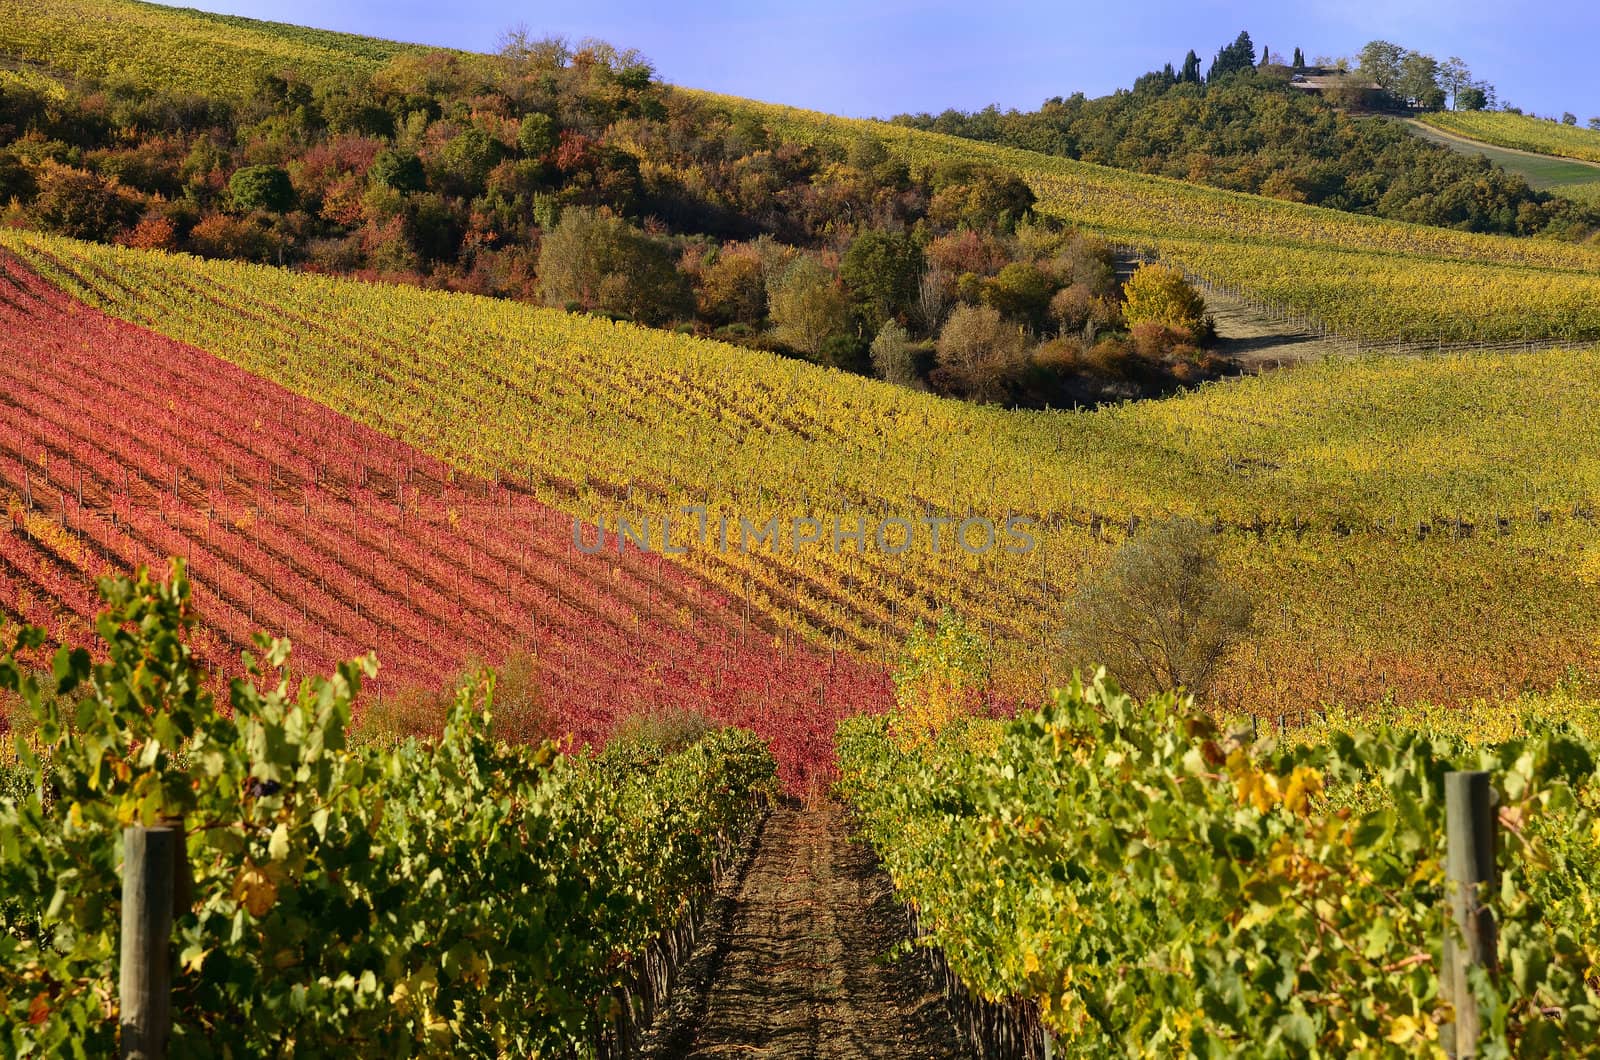 Vineyards in autumn by mizio1970